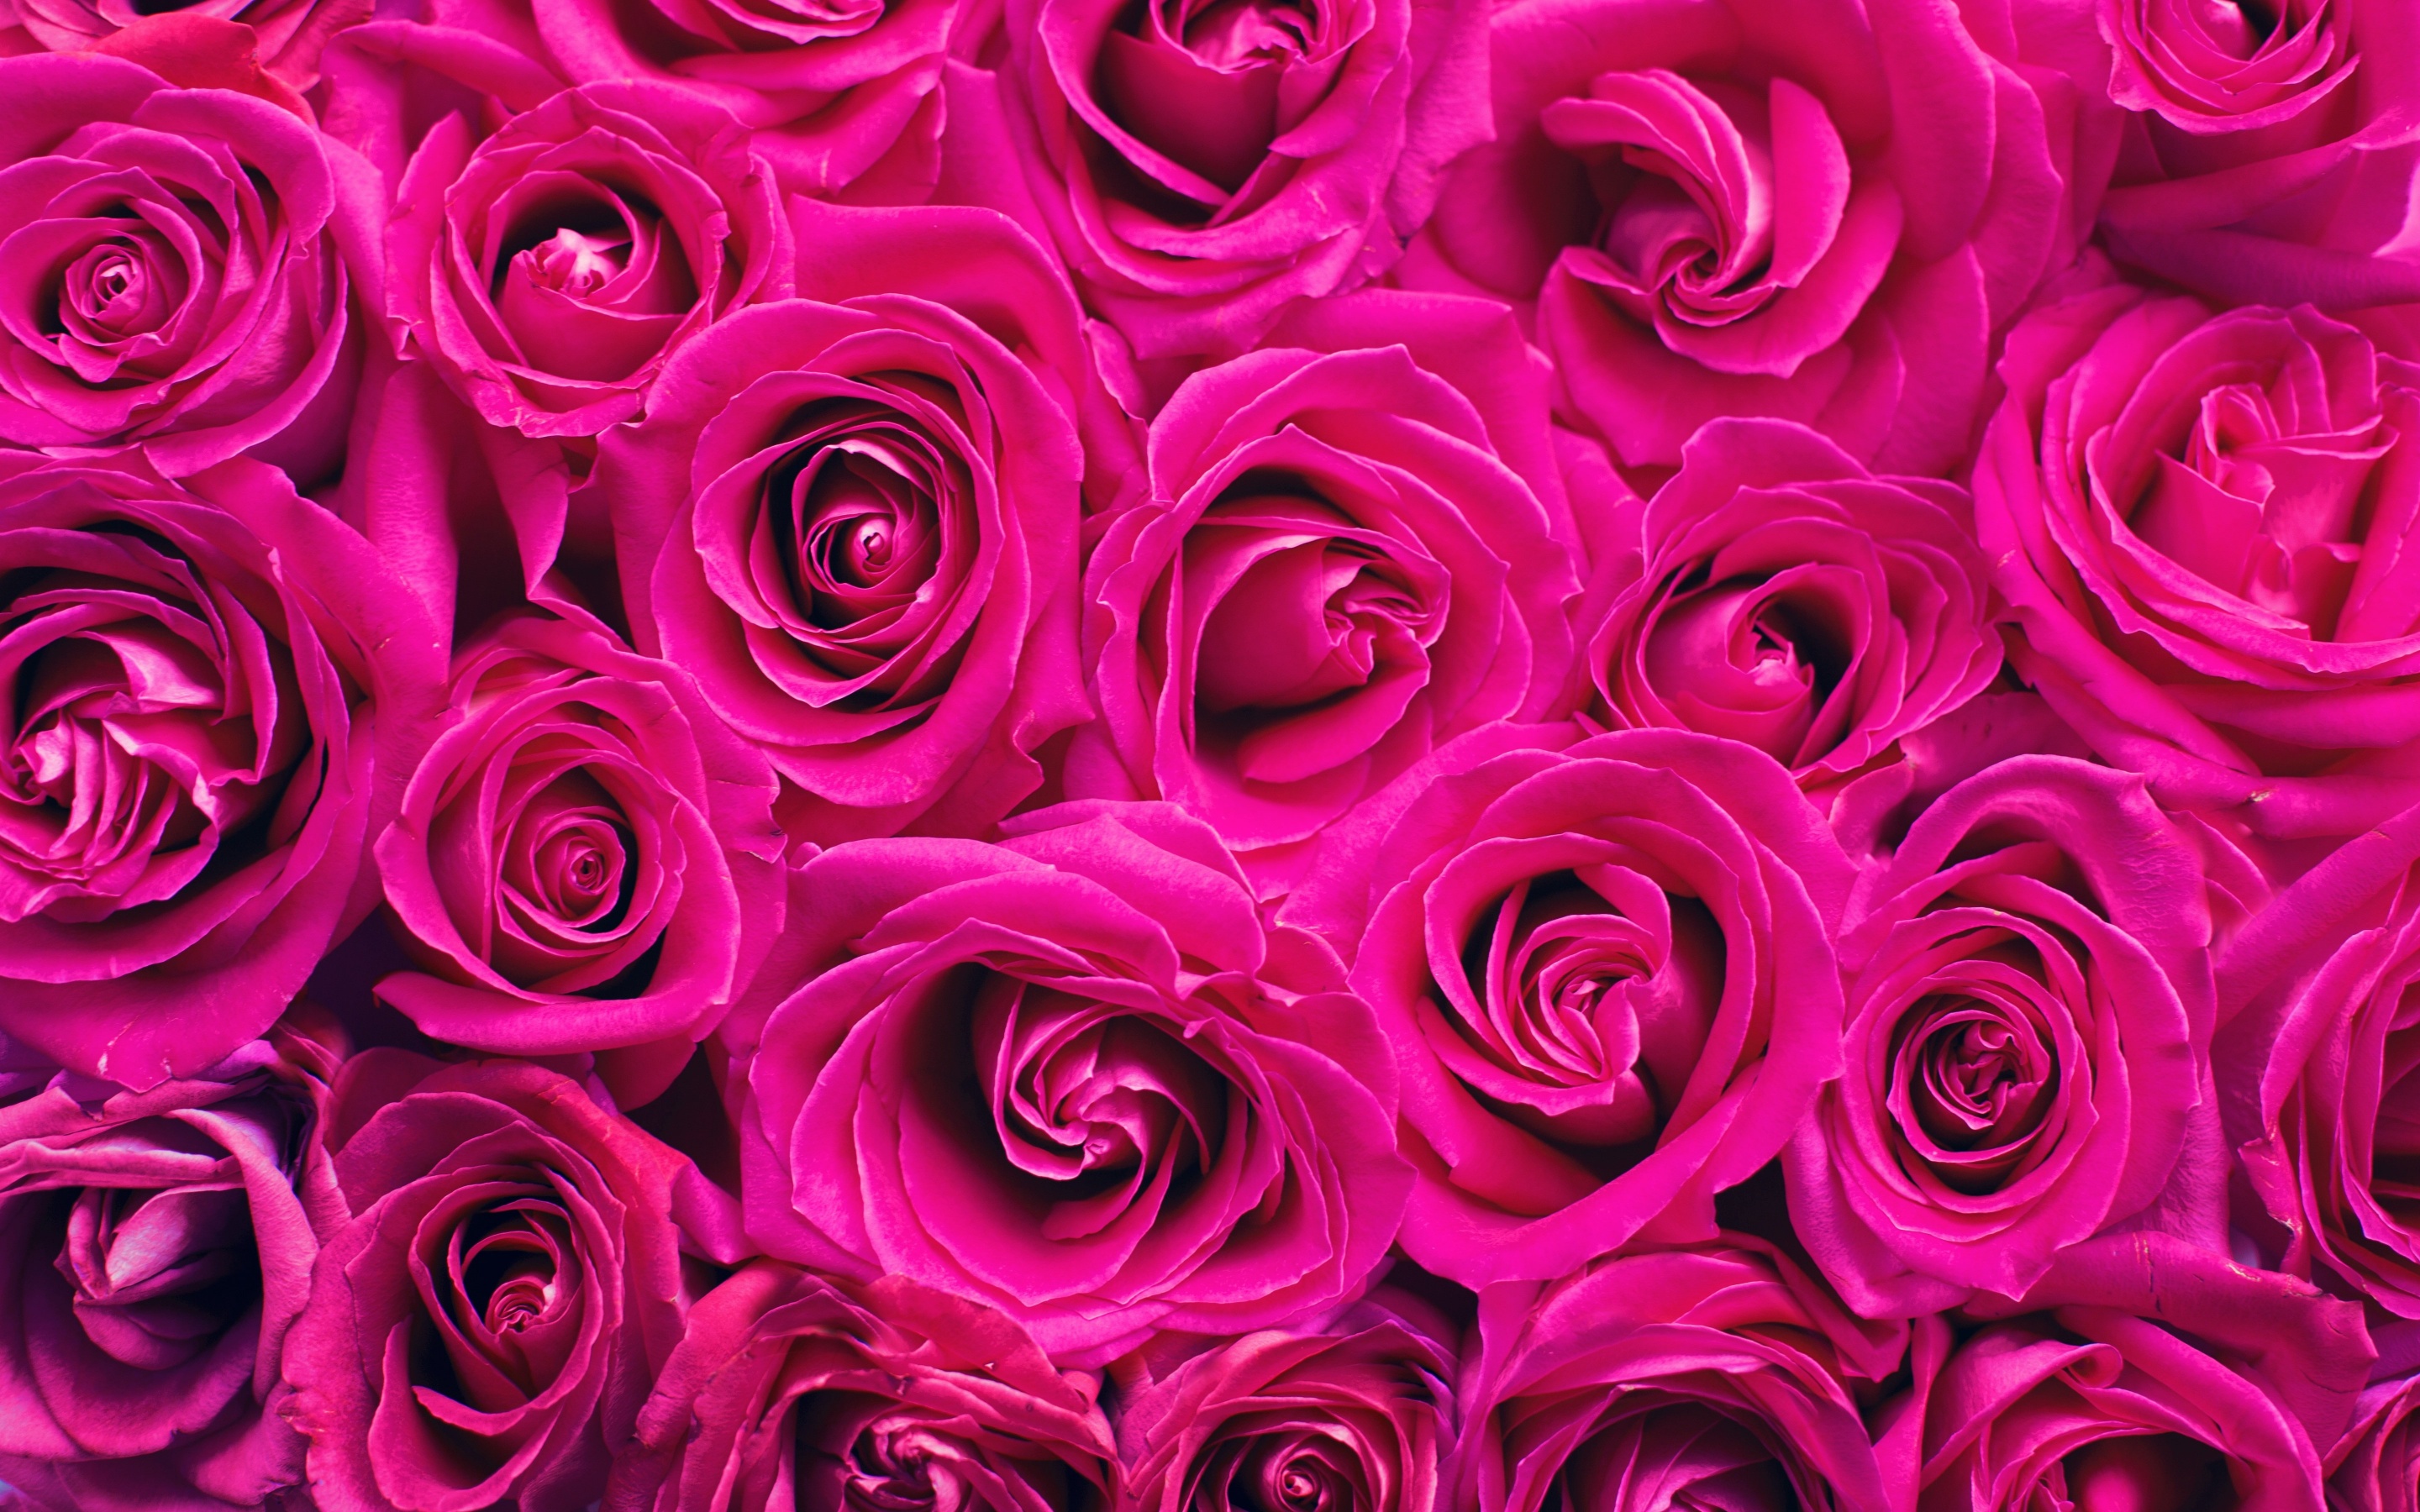 Hoa hồng là biểu tượng của sự rực rỡ và đầy cảm xúc, đừng bỏ lỡ cơ hội để đắm mình trong vẻ đẹp tuyệt vời của nó trong hình ảnh này.